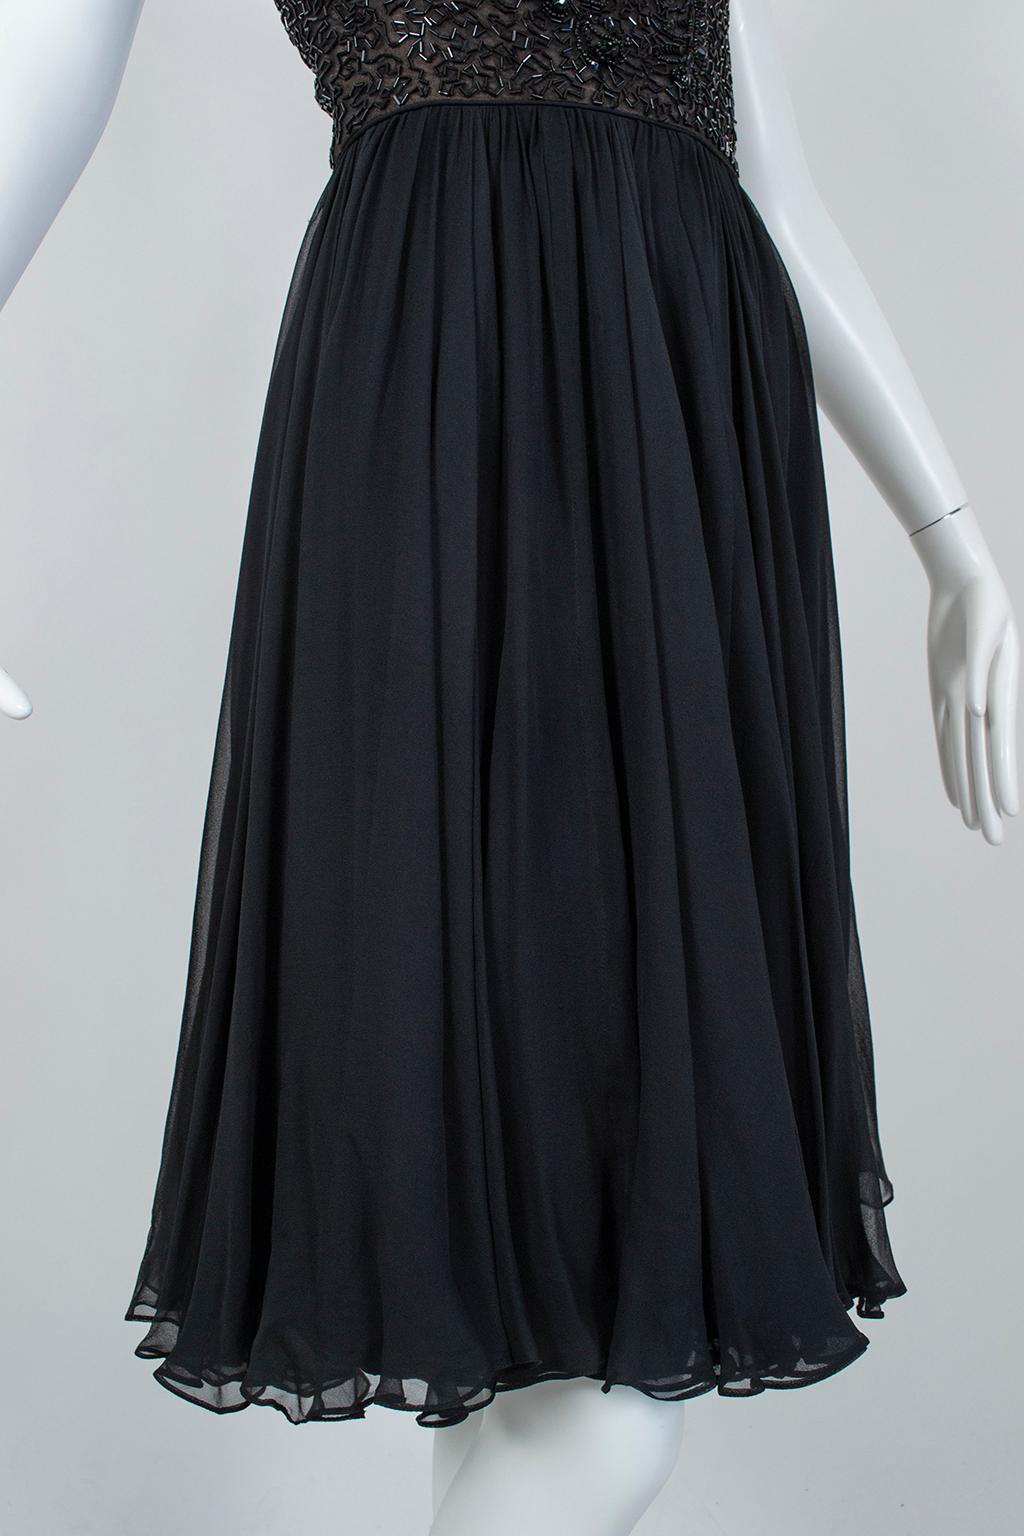 Robe de soirée noire ornée de perles Chandelier et illusion de transparence avec jupe trompette tourbillonnante, Taille M, années 1950 en vente 4